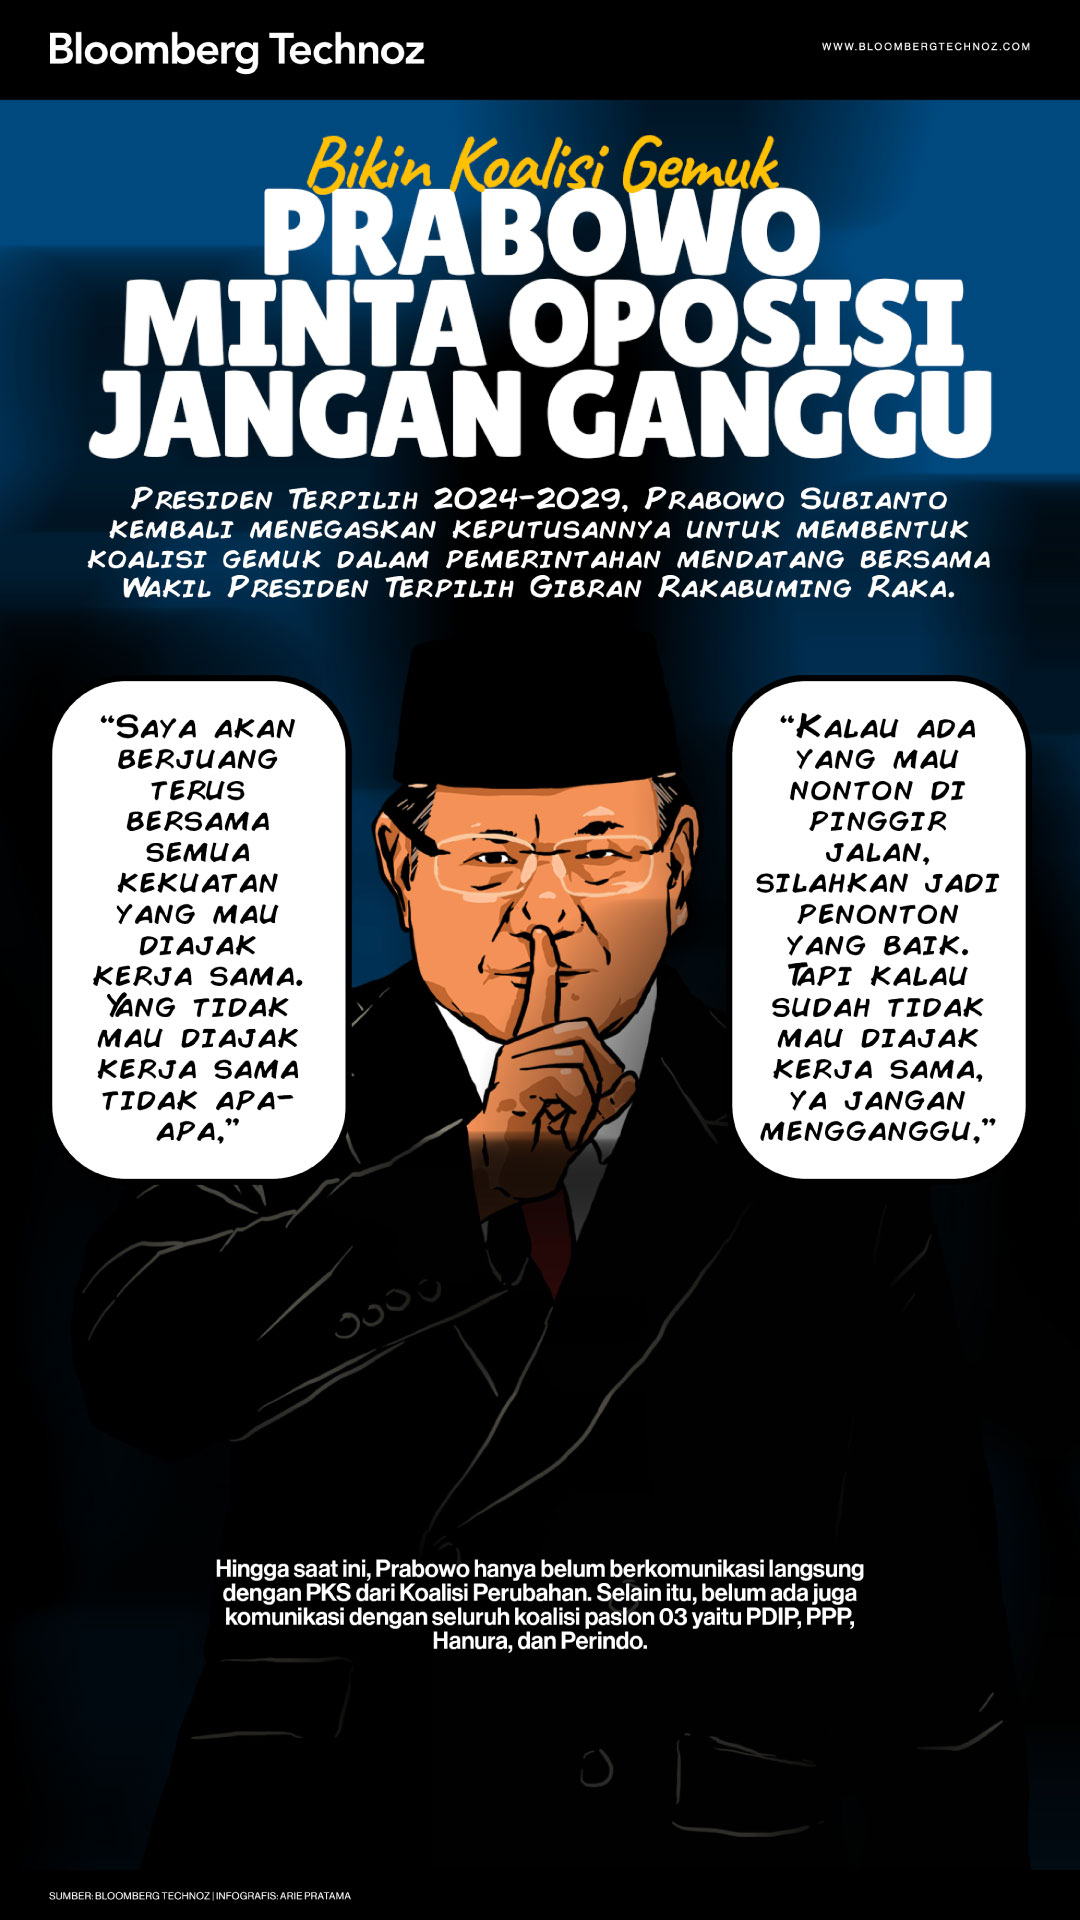 Bikin Koalisi Gemuk, Prabowo Minta Oposisi Jangan Ganggu (Bloomberg Technoz/Arie Pratama)